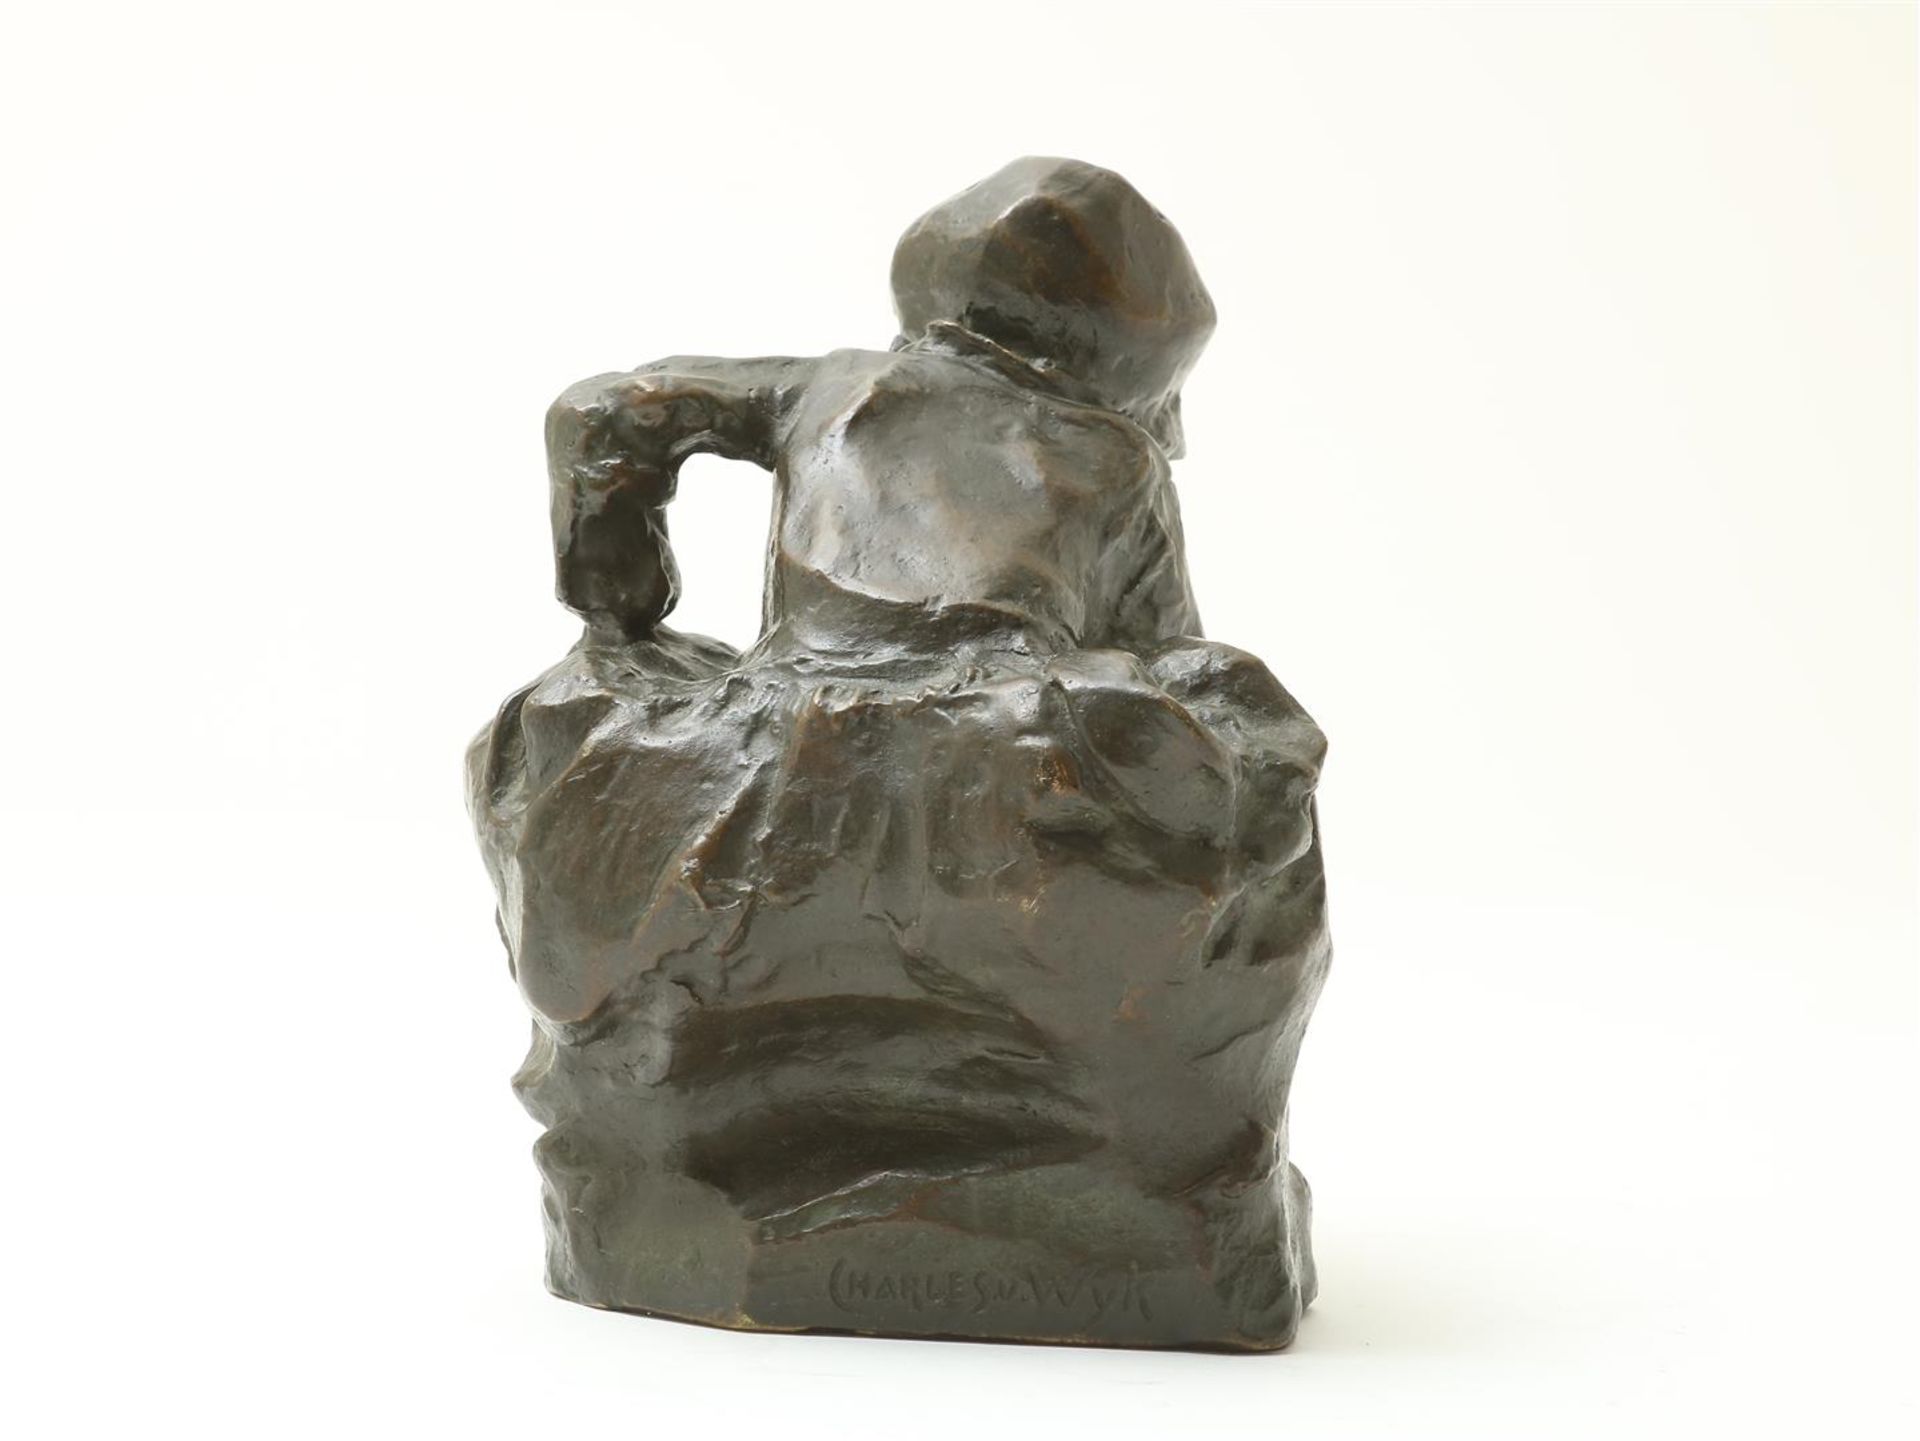 Wijk, "Charles" van. Bronze sculpture - Bild 5 aus 7